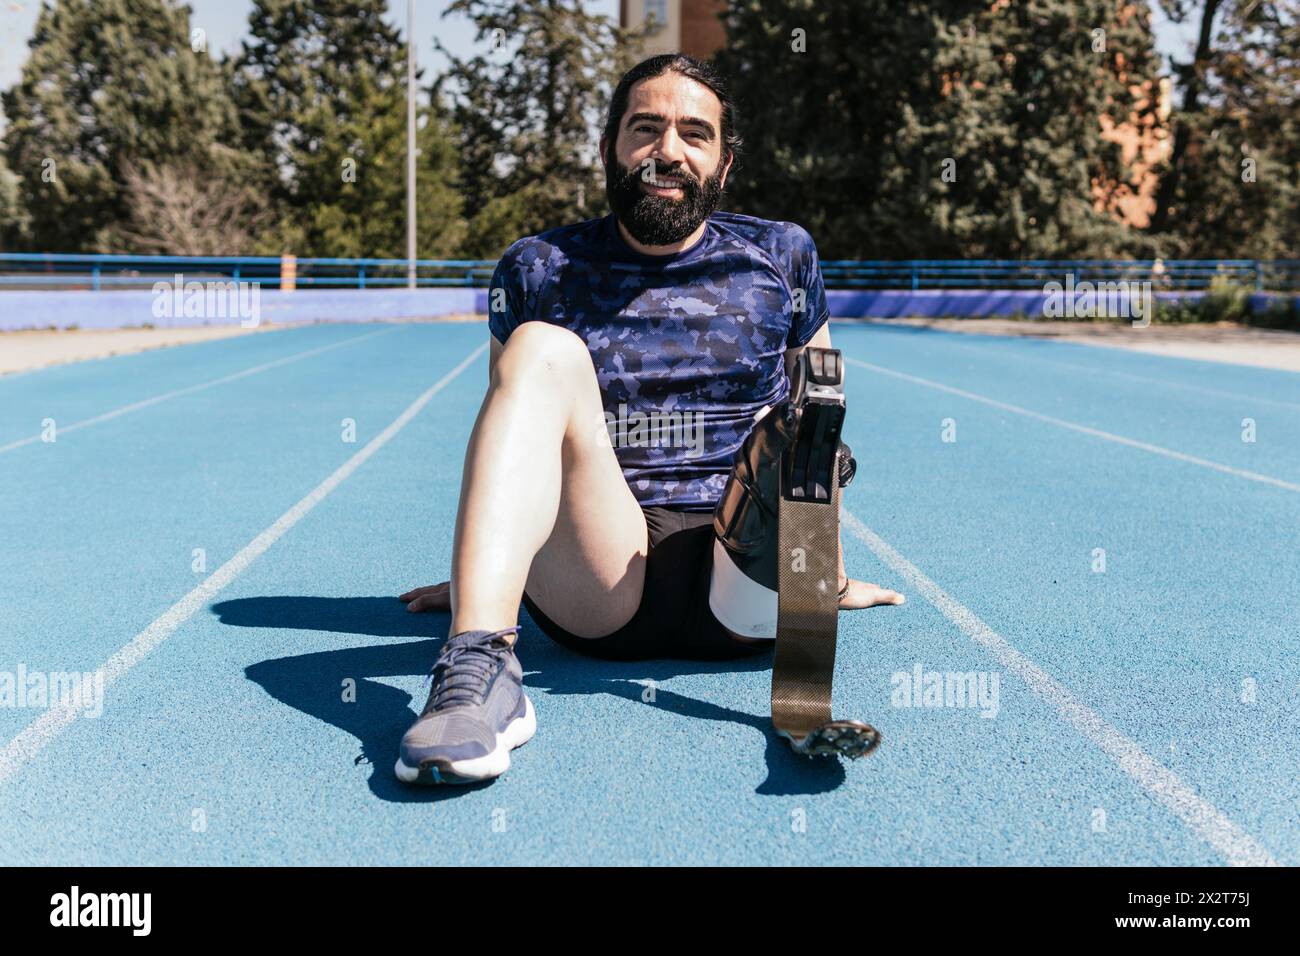 Athlète souriant avec une jambe prothétique assise sur une piste de sport Banque D'Images